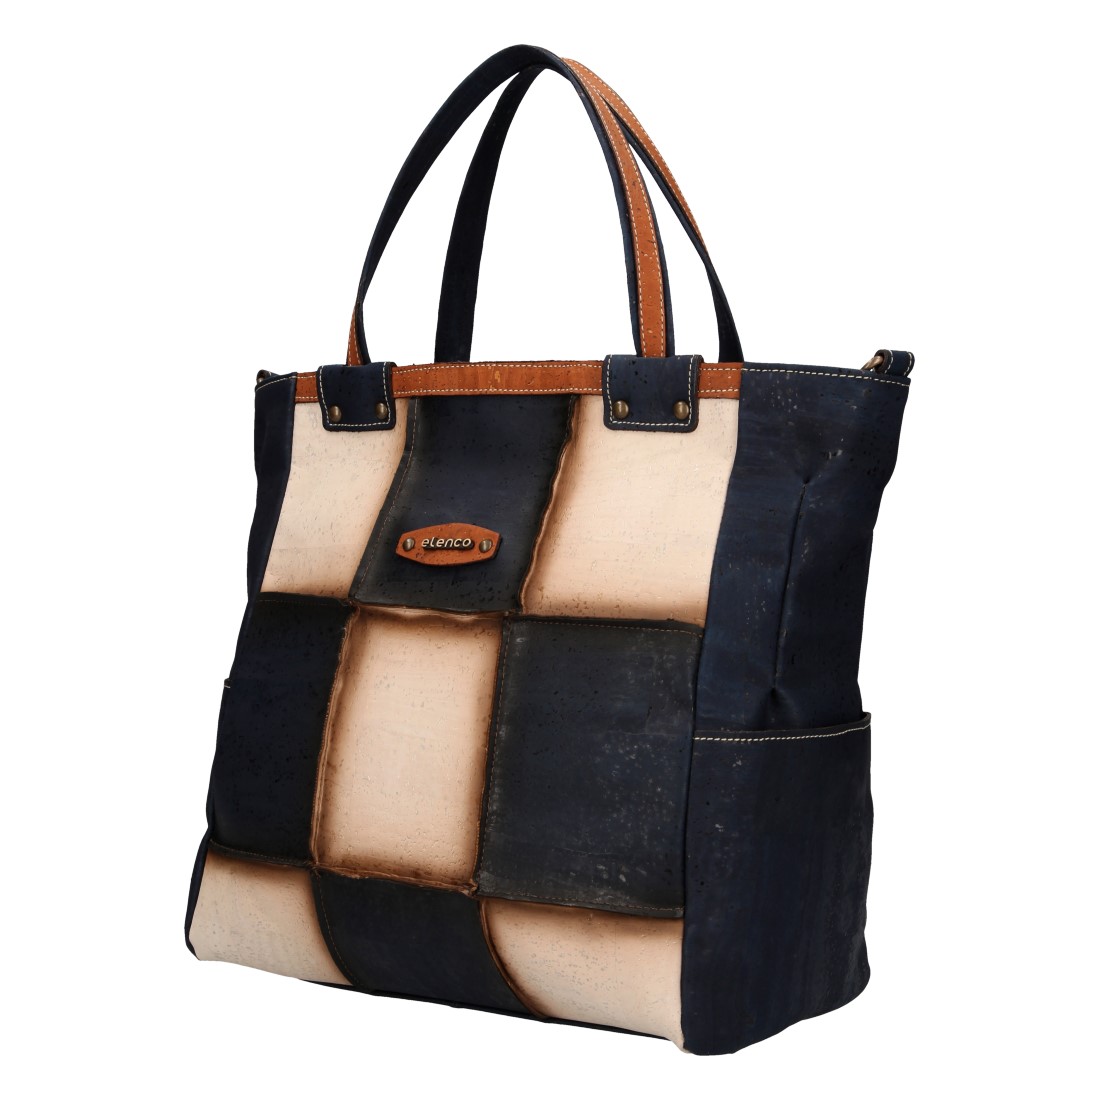 Cork handbag EL004064 - SacEnGros